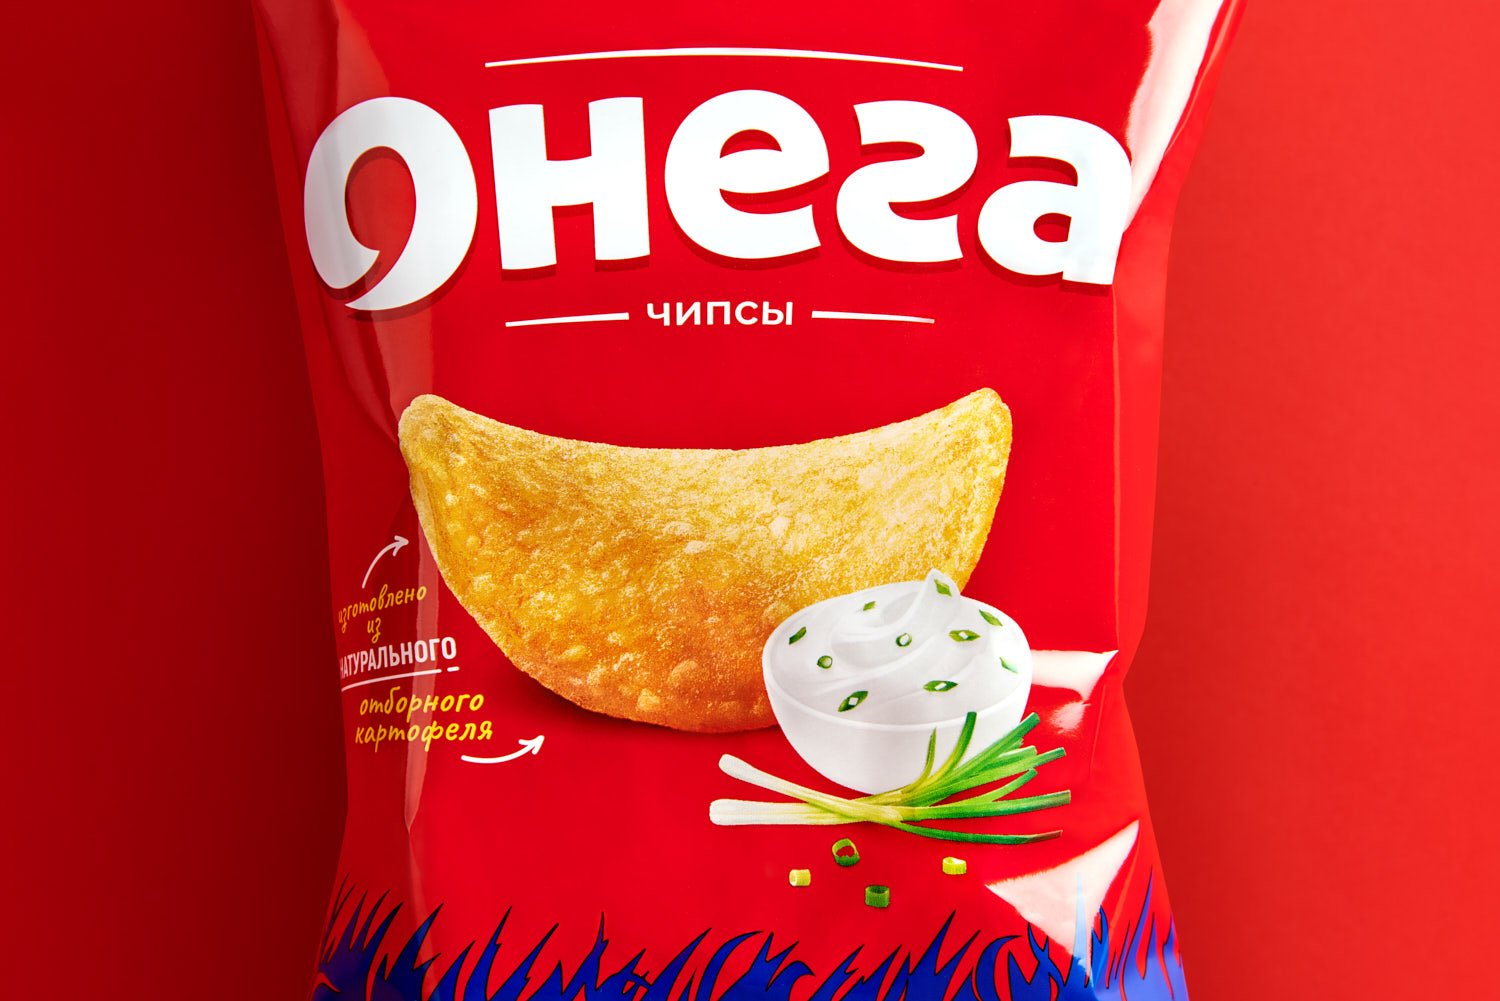 Онега отзывы. Онега чипсы. Онега логотип. Онега упаковка. Белорусские чипсы Онега.